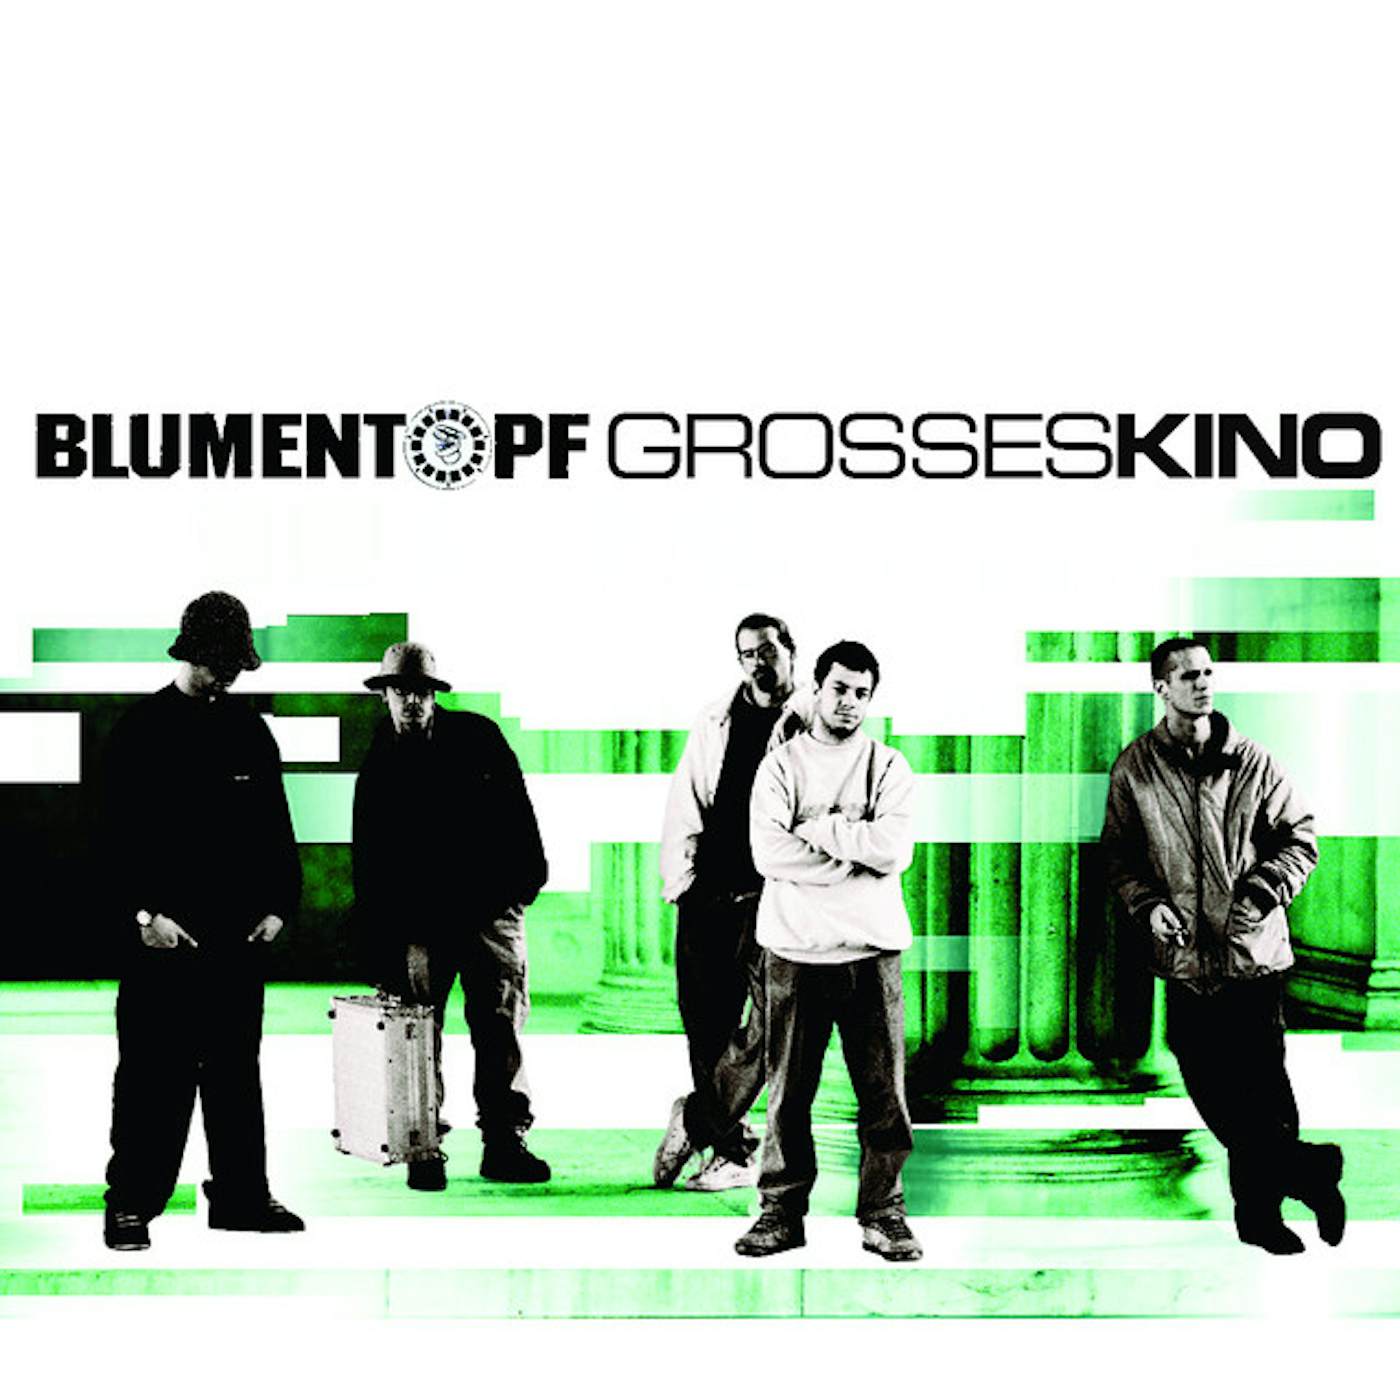 Blumentopf GROSSES KINO CD